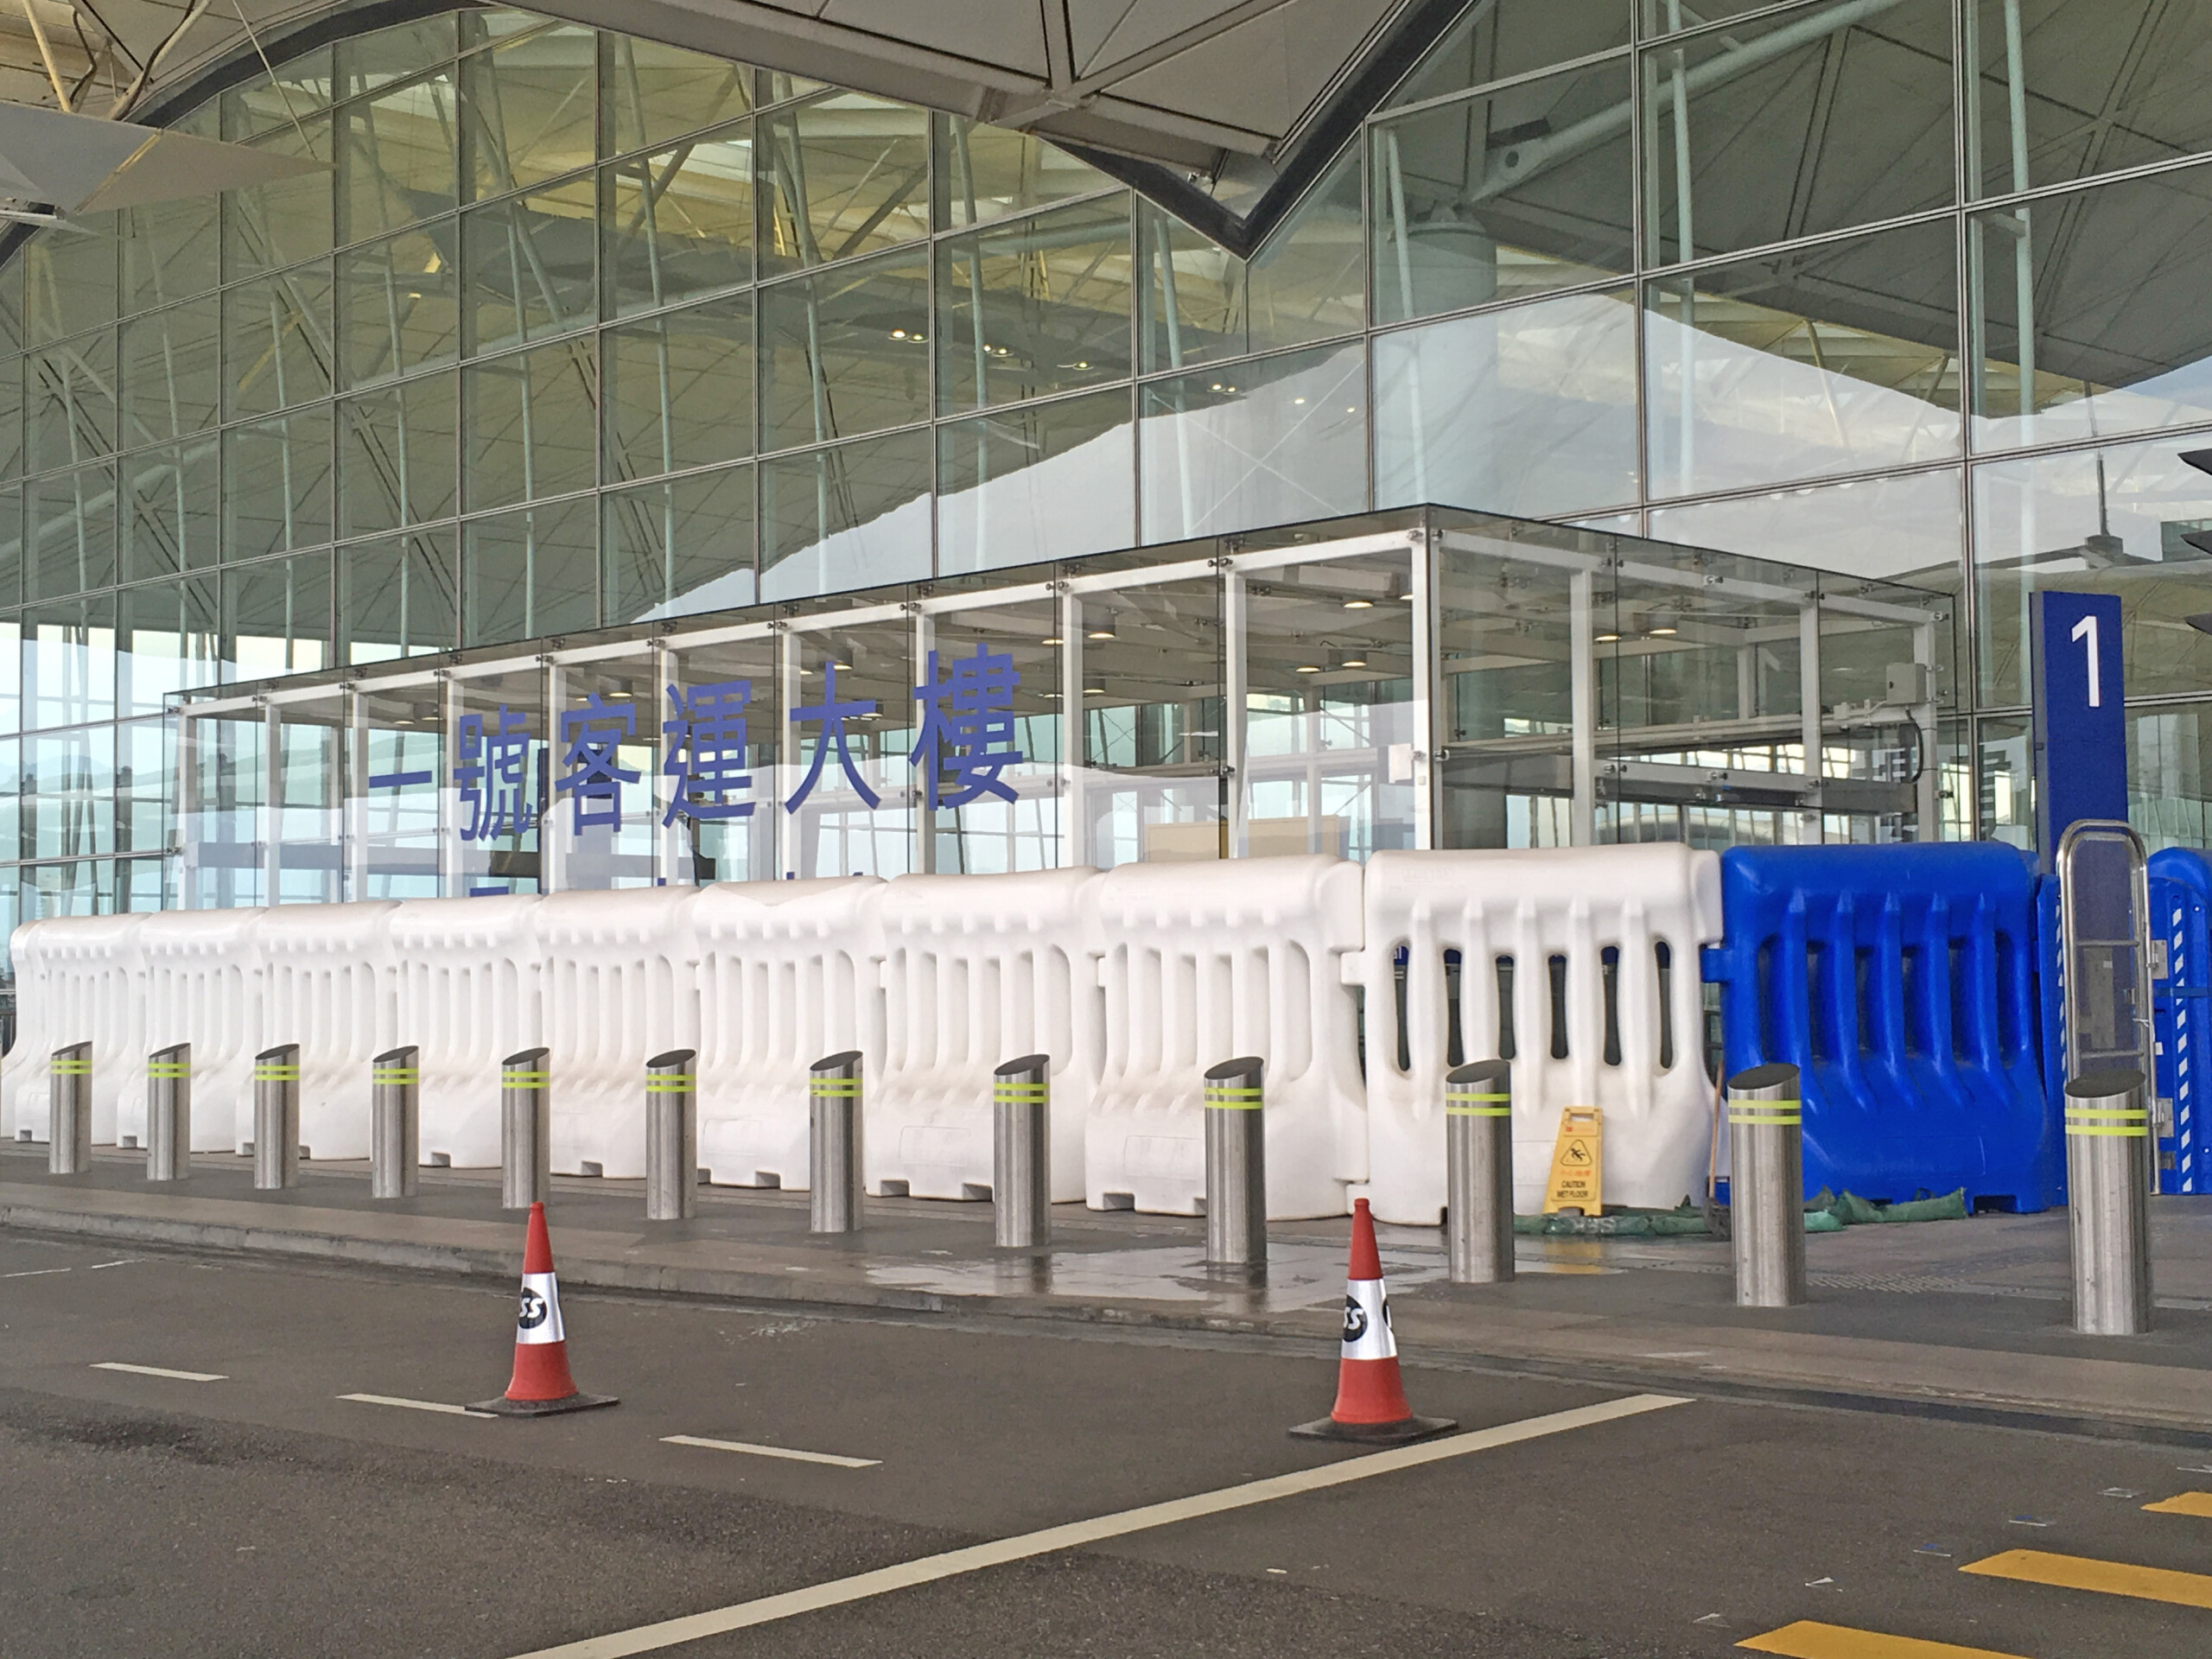 Entry Barriers at Hong Kong International Airport, November 2019